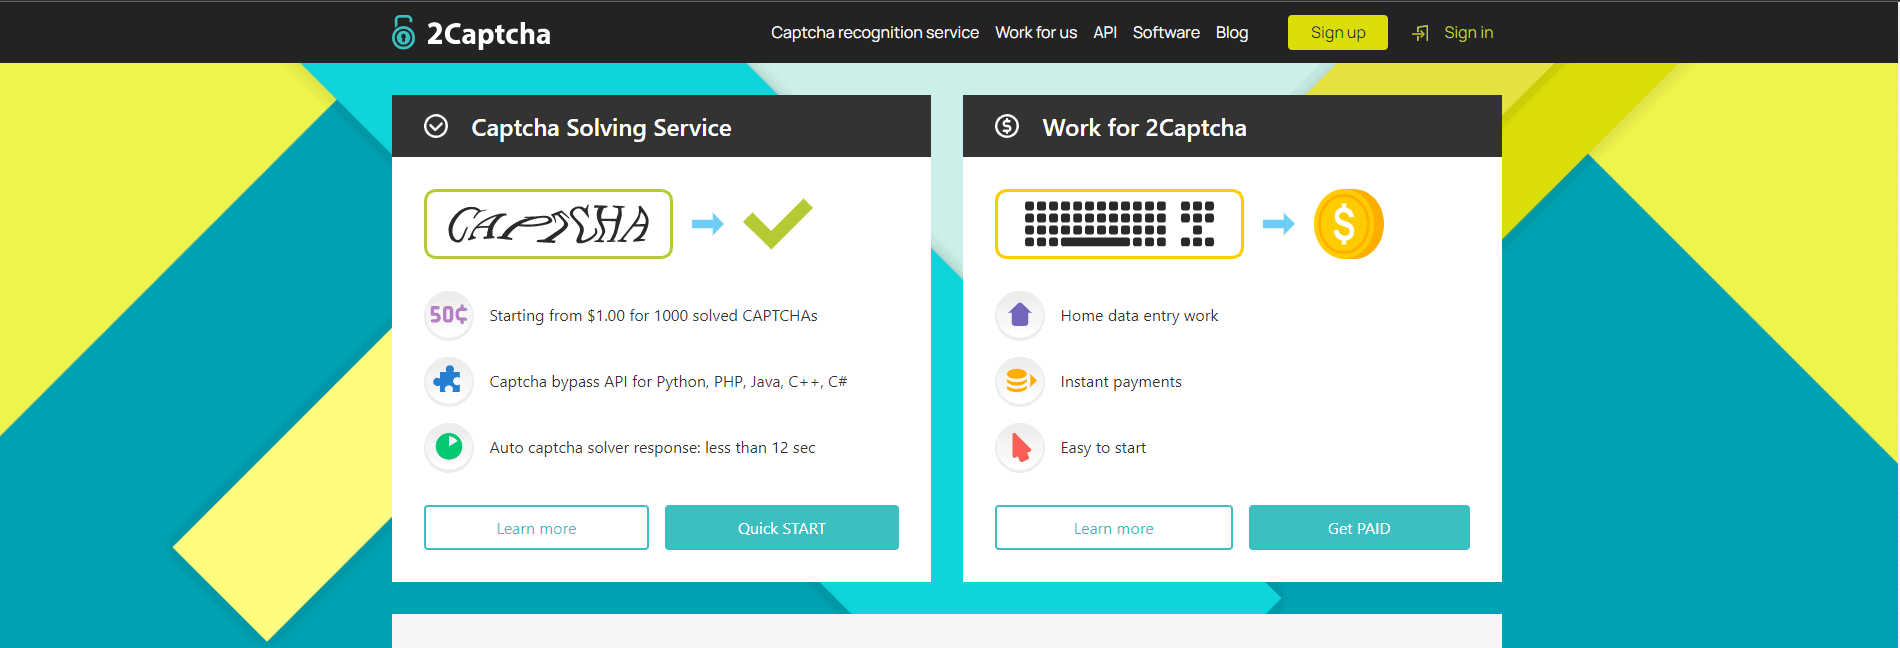 2Captcha - Best Captcha Solving Jobs Sites